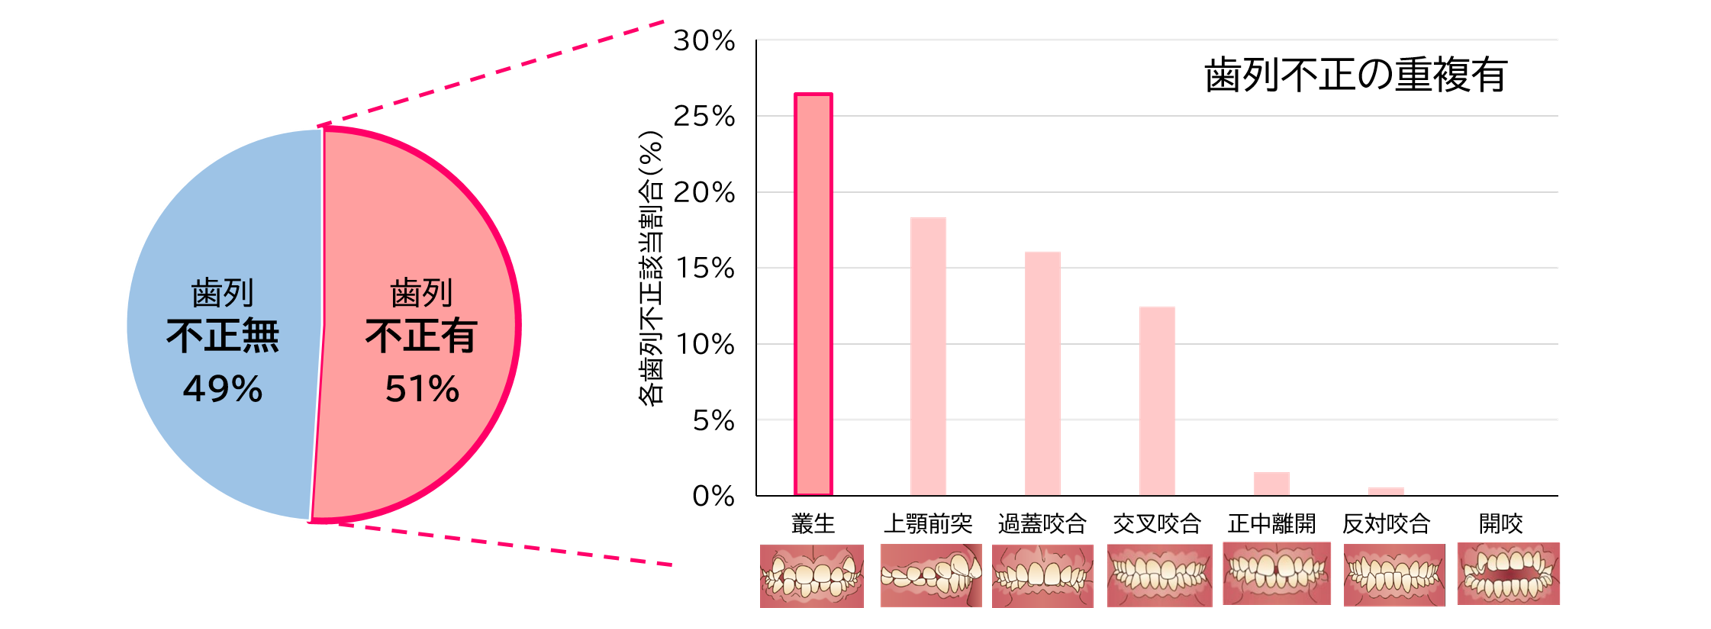 ライオン×青森県黒石市×弘前大学の共同研究　
歯並びの状態と日常の生活習慣や癖が関係する可能性を確認